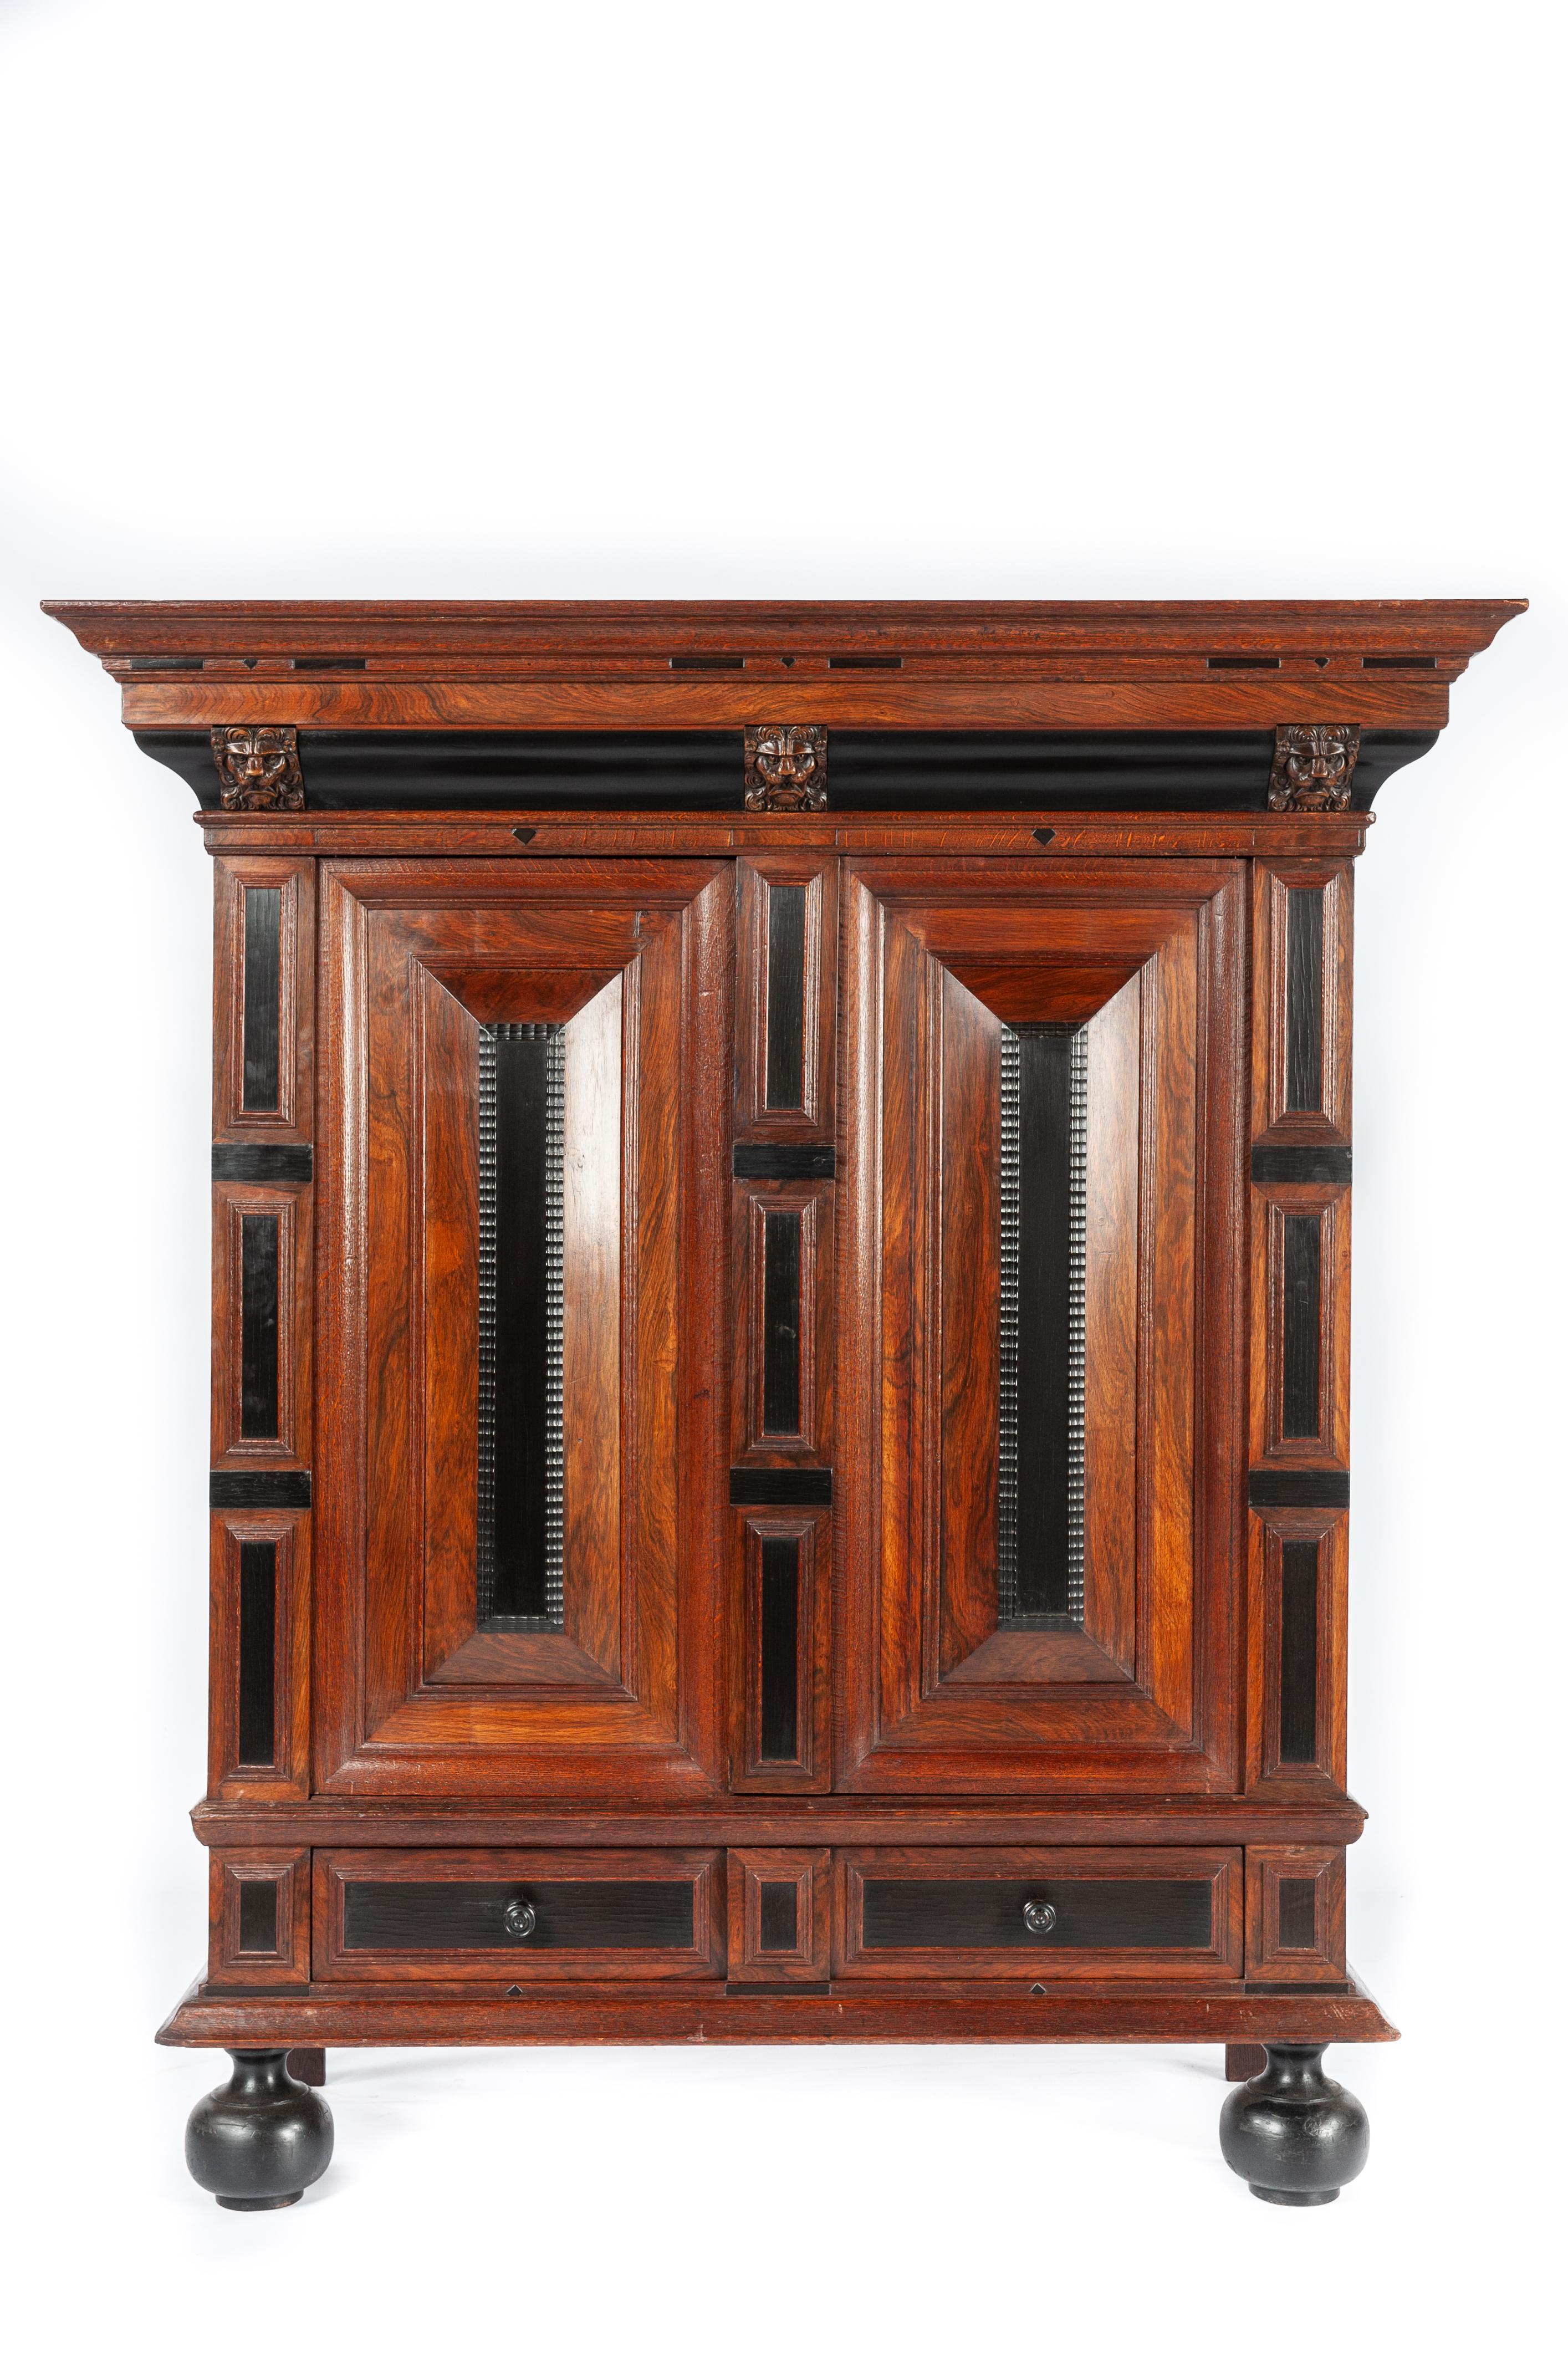 Cette belle armoire de taille conviviale est fabriquée dans le plus beau chêne arrosé, dans la tradition de la Renaissance hollandaise durant l'